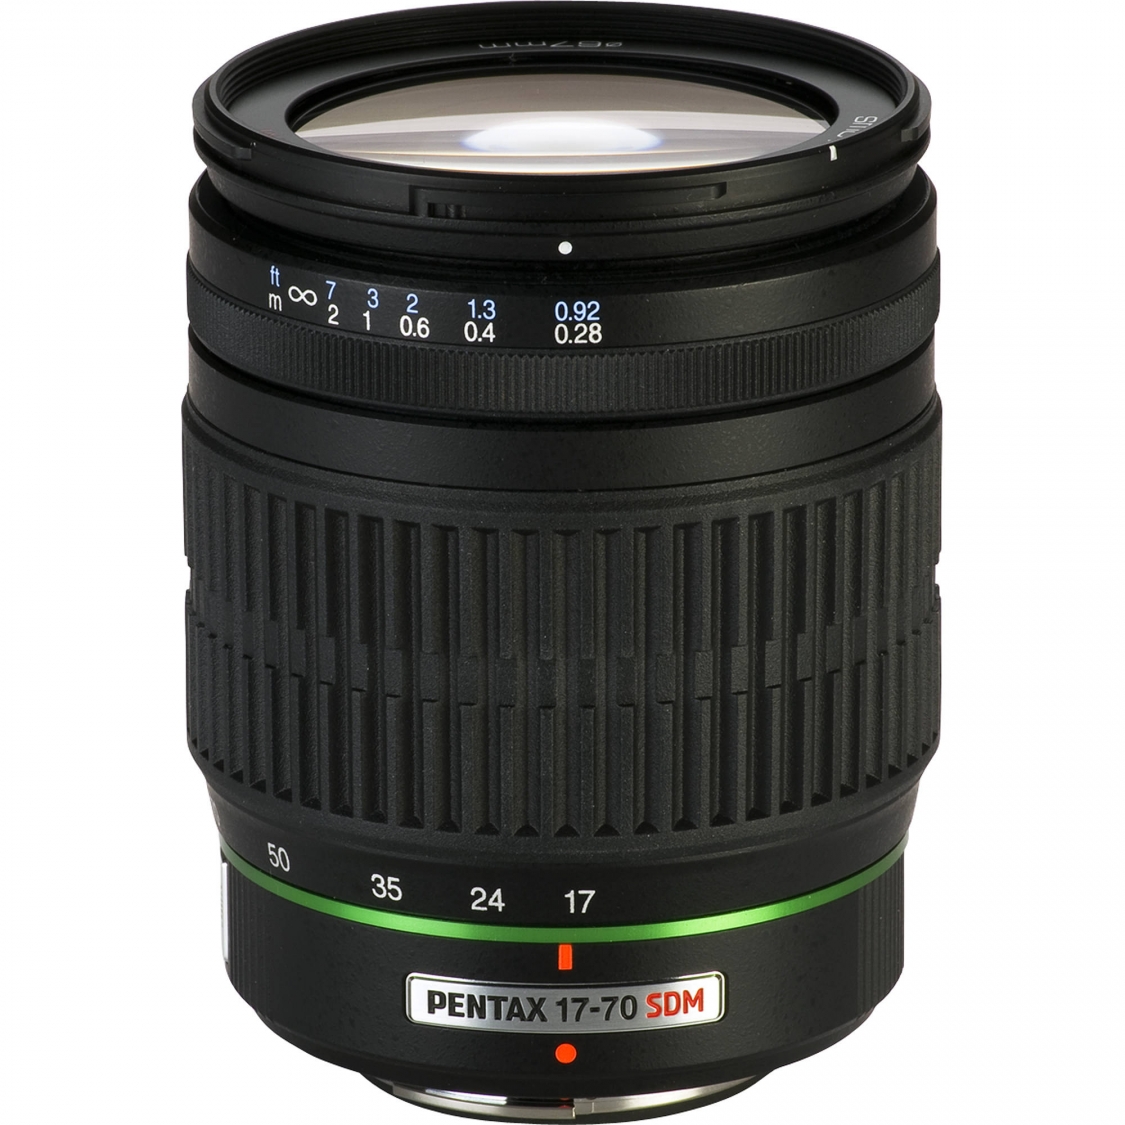 Pentax DA 17-70mm F4.0 SDM Lens